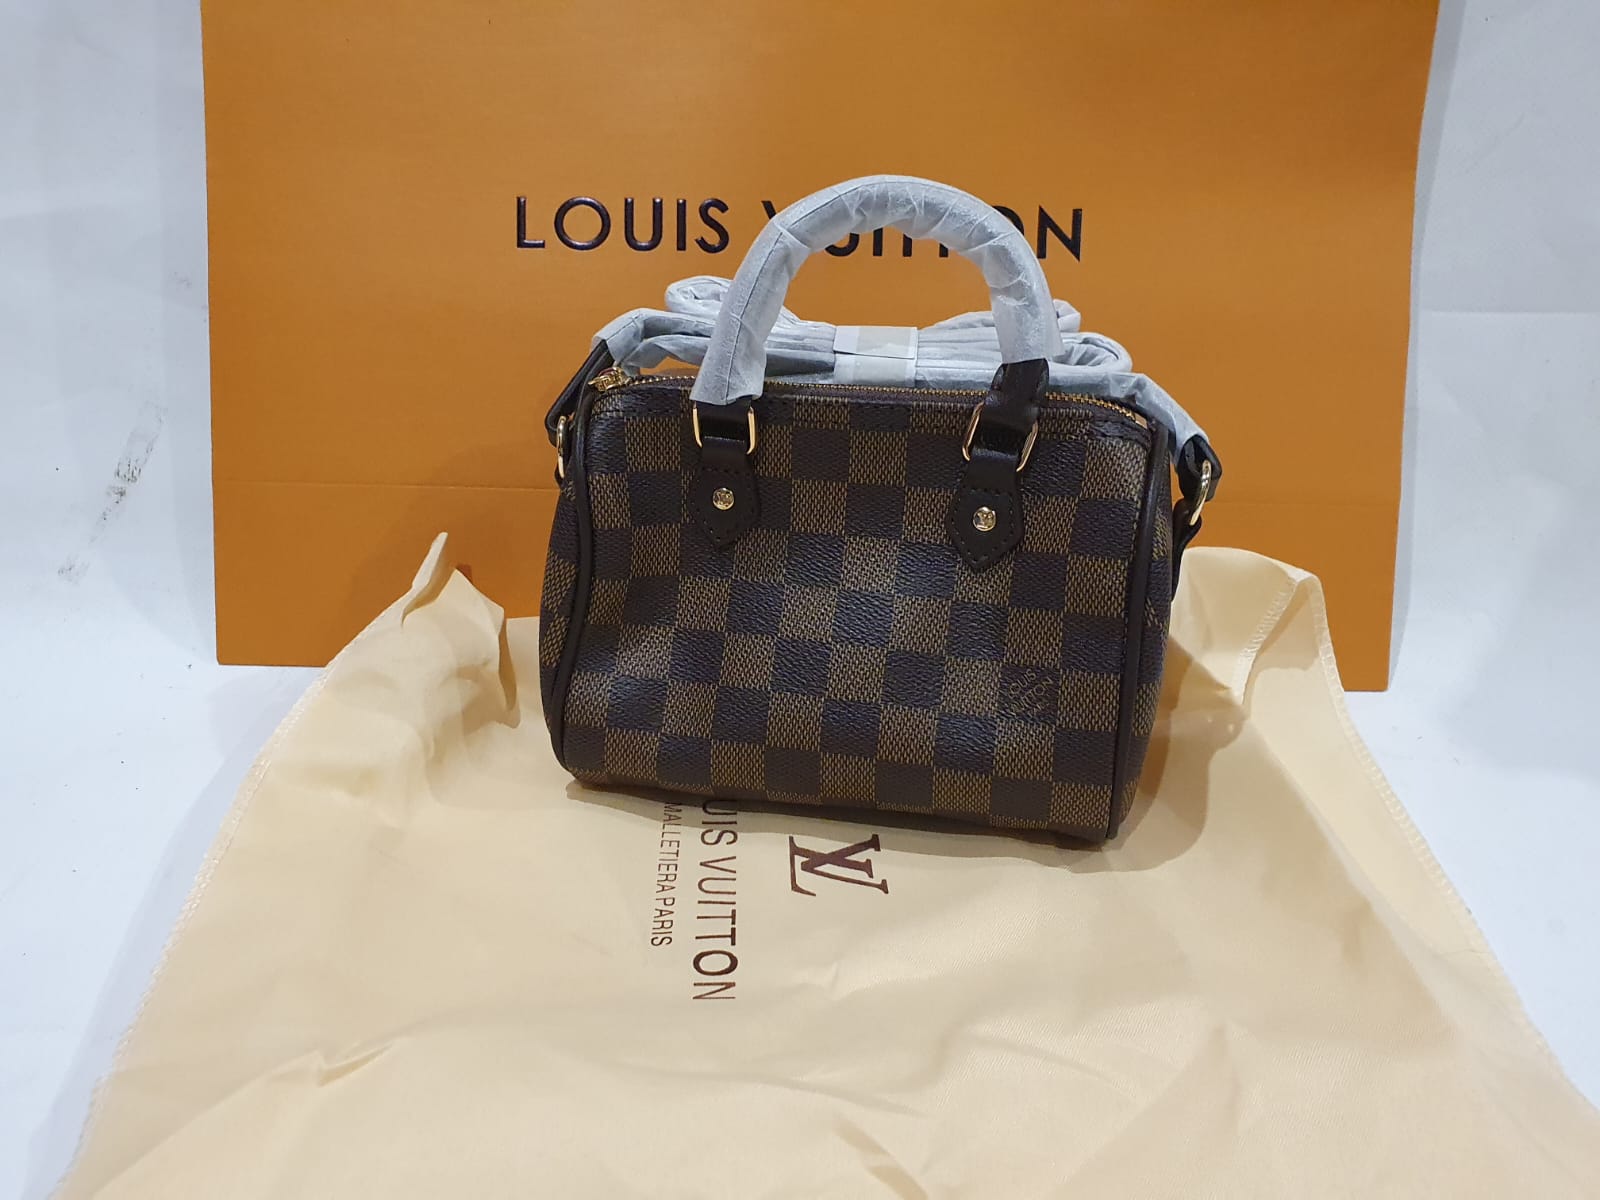 Louis Vuitton Speedy mini handbag